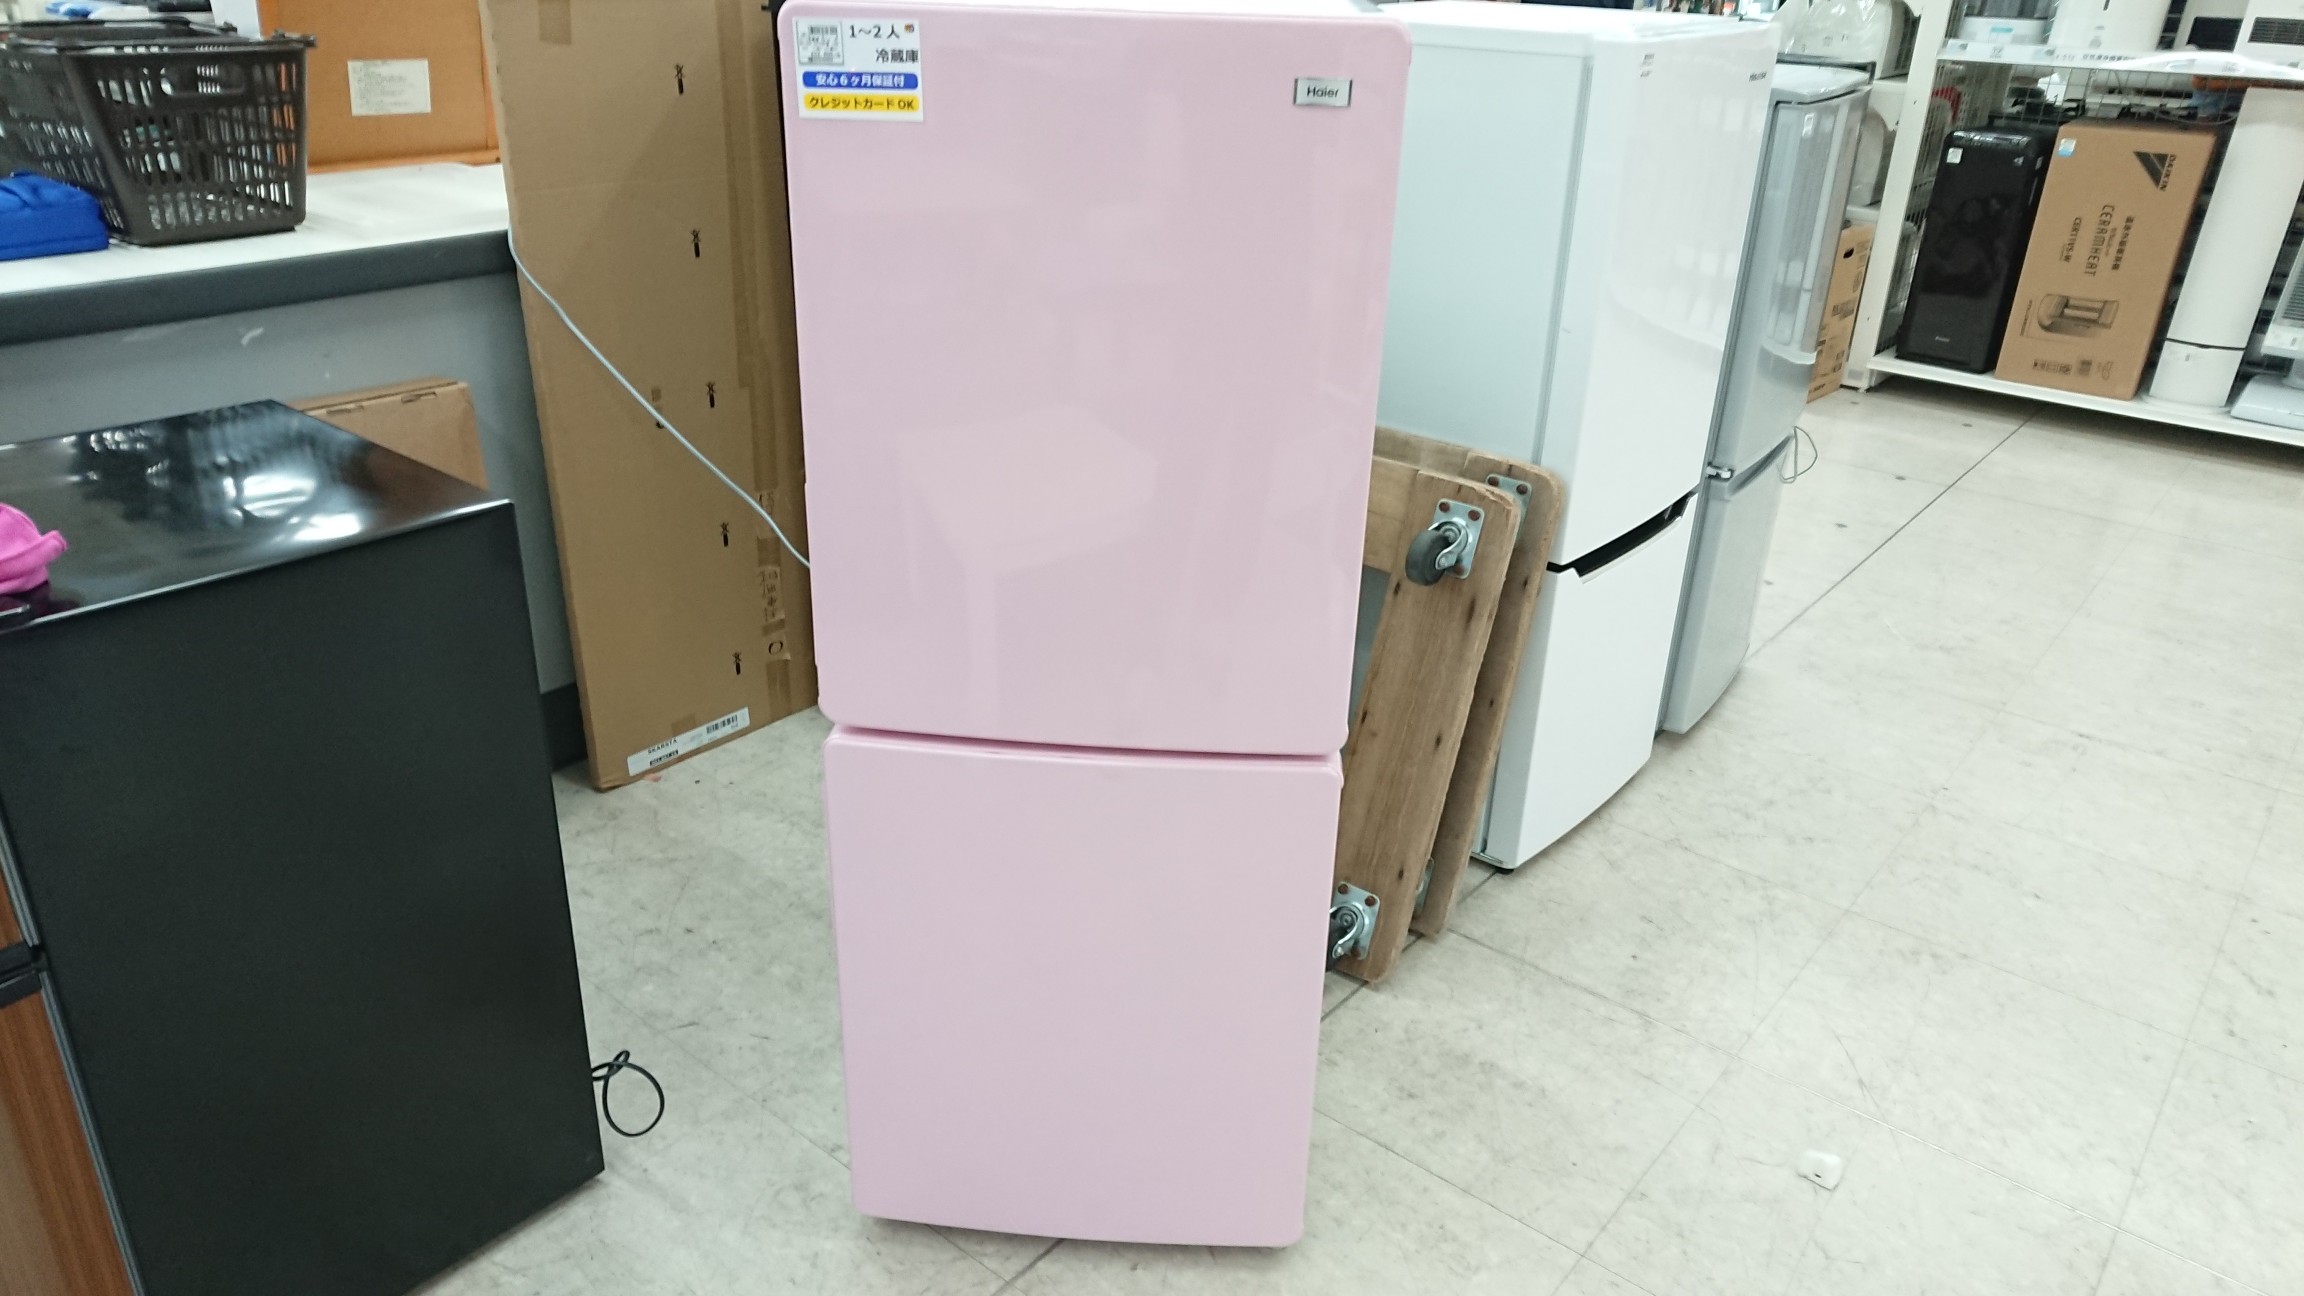 大人気 Haier ピンクの2ドア冷蔵庫が買取入荷 南大沢店 19年02月03日